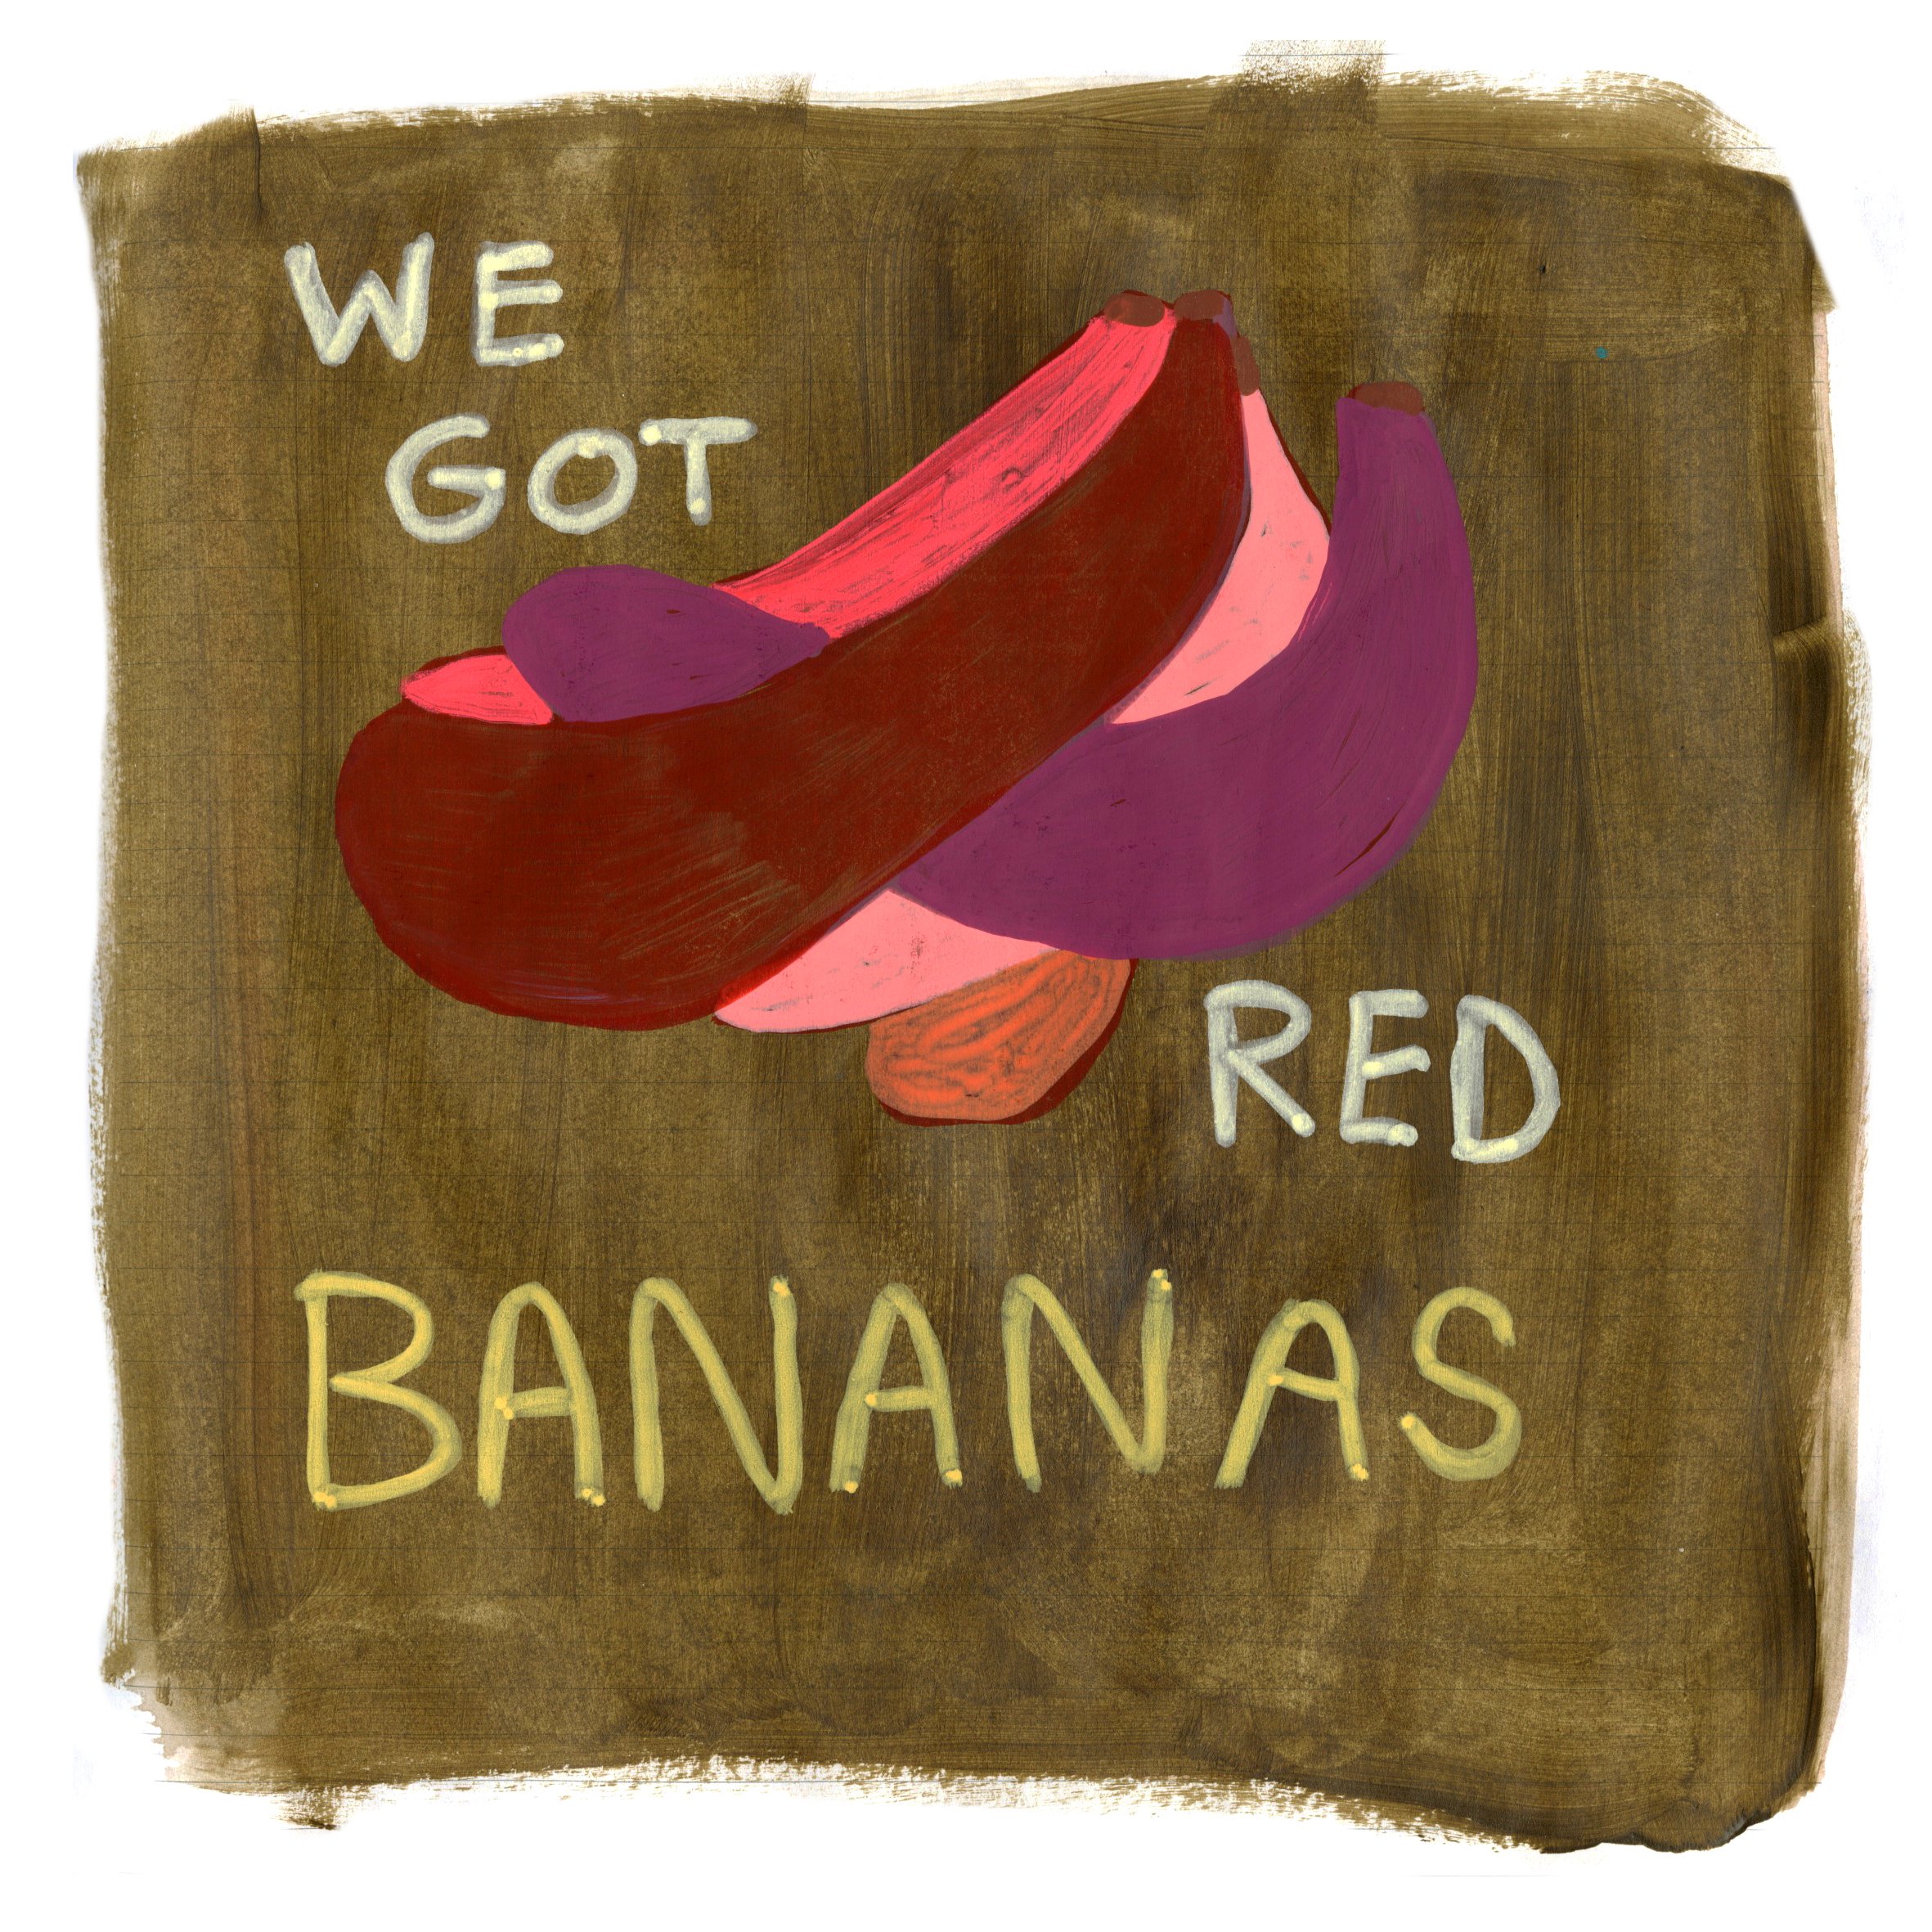 KEH_red bananas.jpg